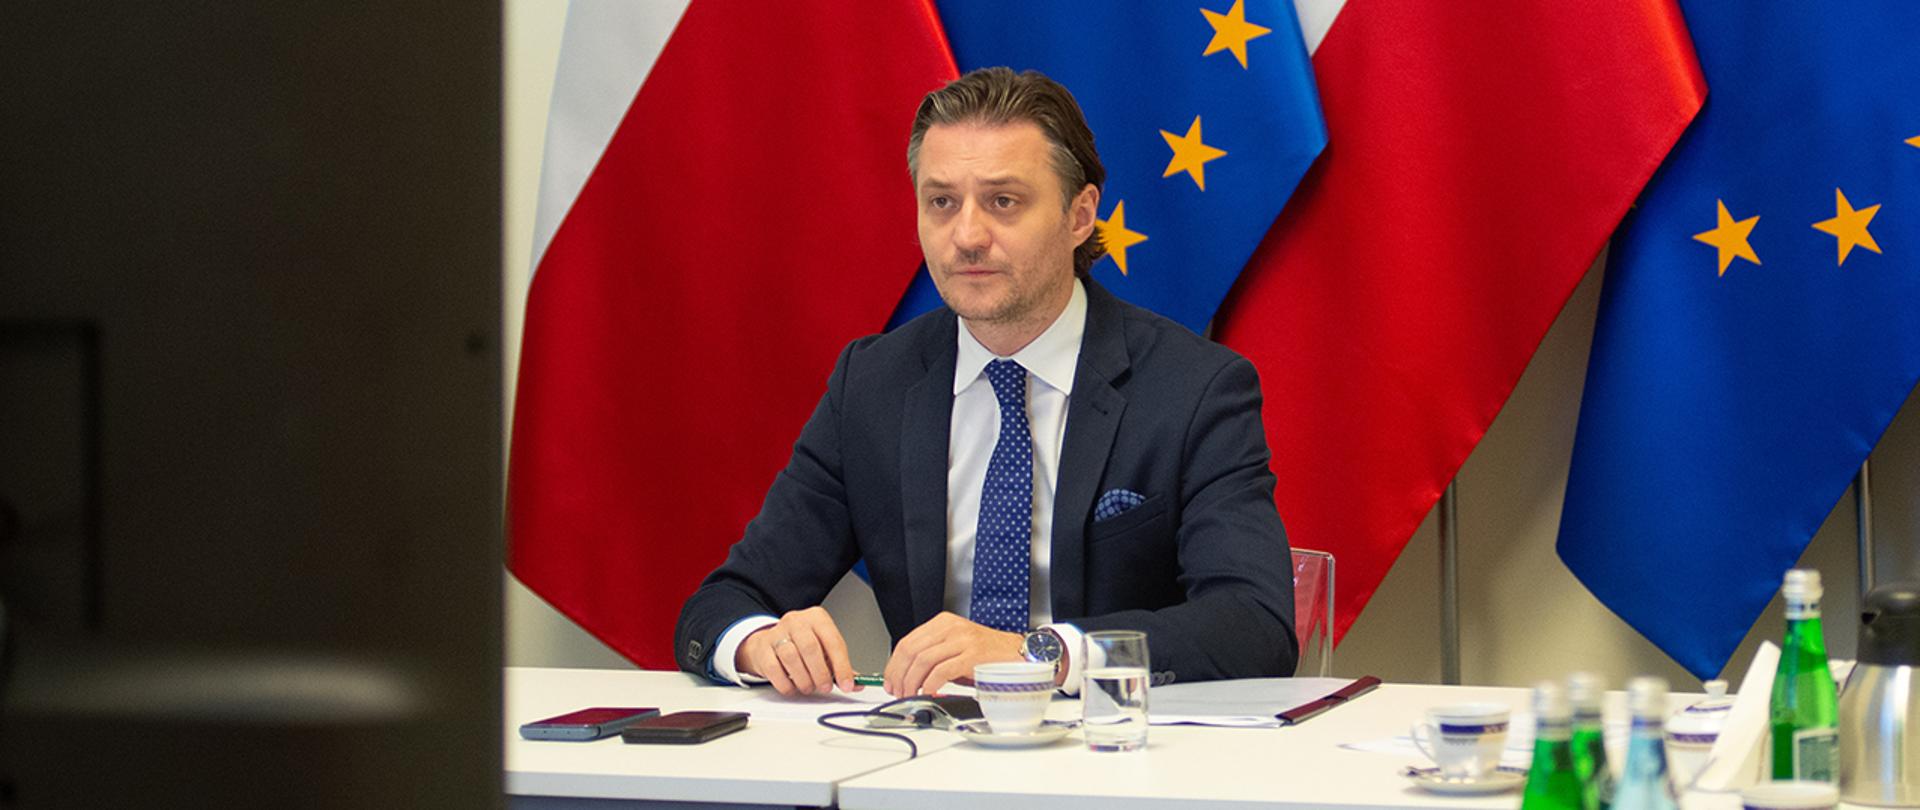 Na zdjęciu widać wiceministra Bartosza Grodeckiego siedzącego za stołem na tle flag Polski i UE.
